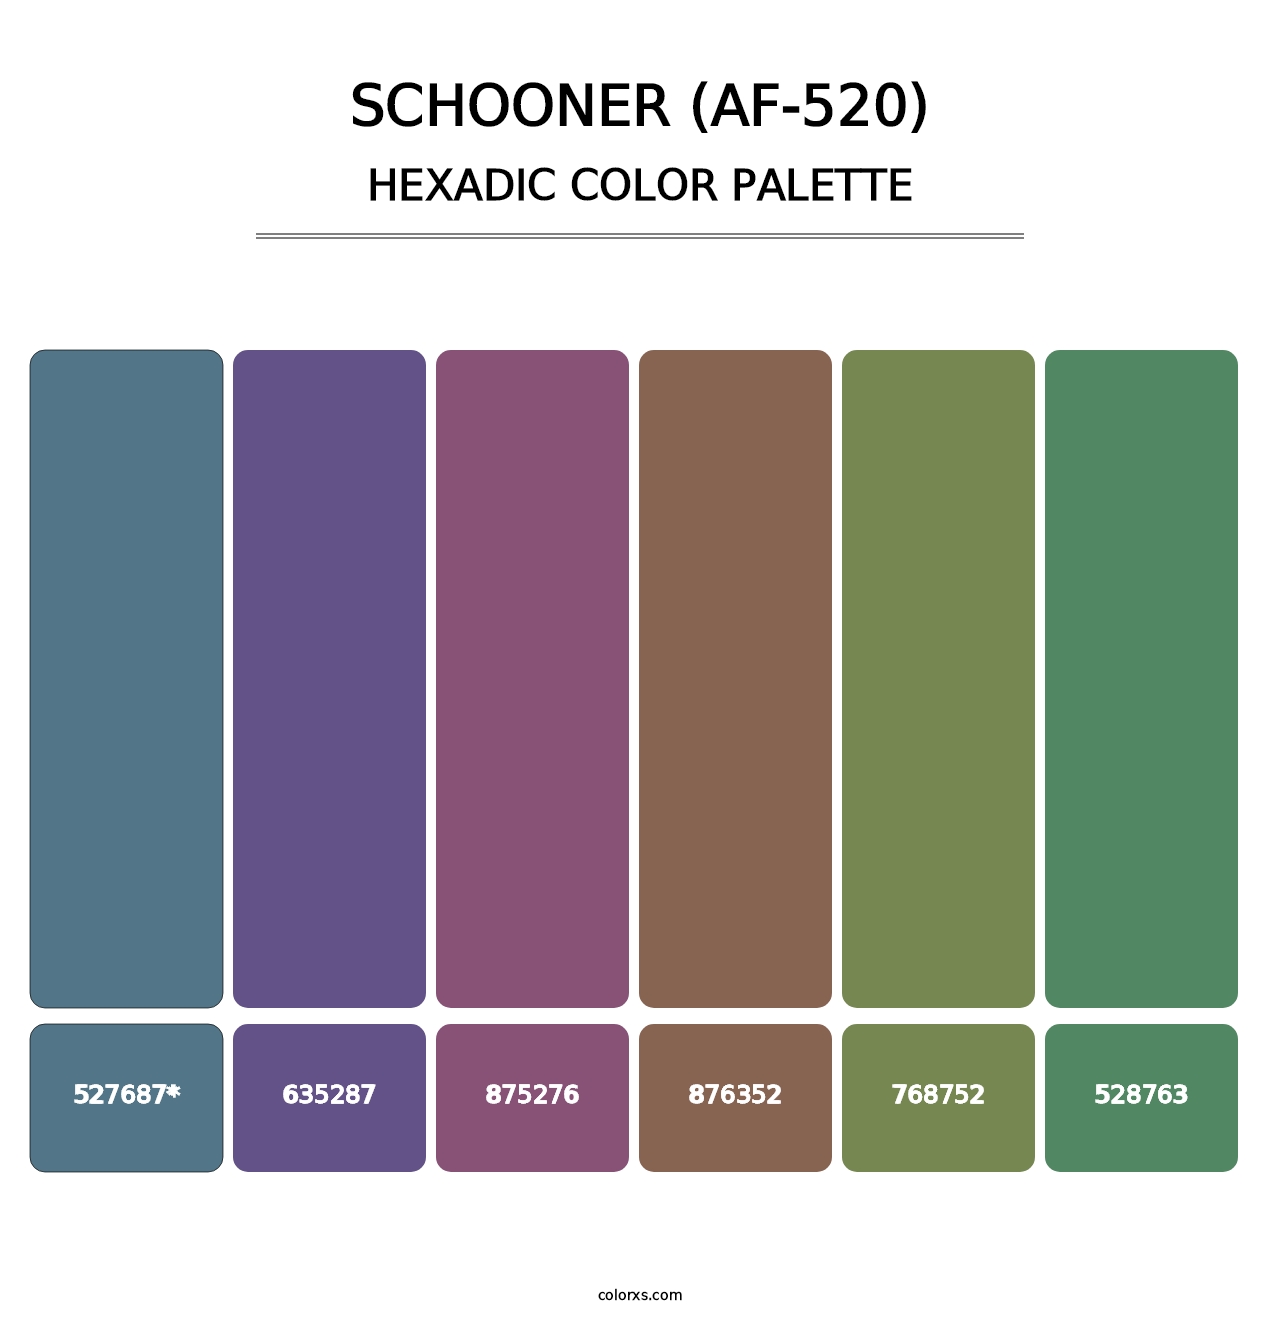 Schooner (AF-520) - Hexadic Color Palette